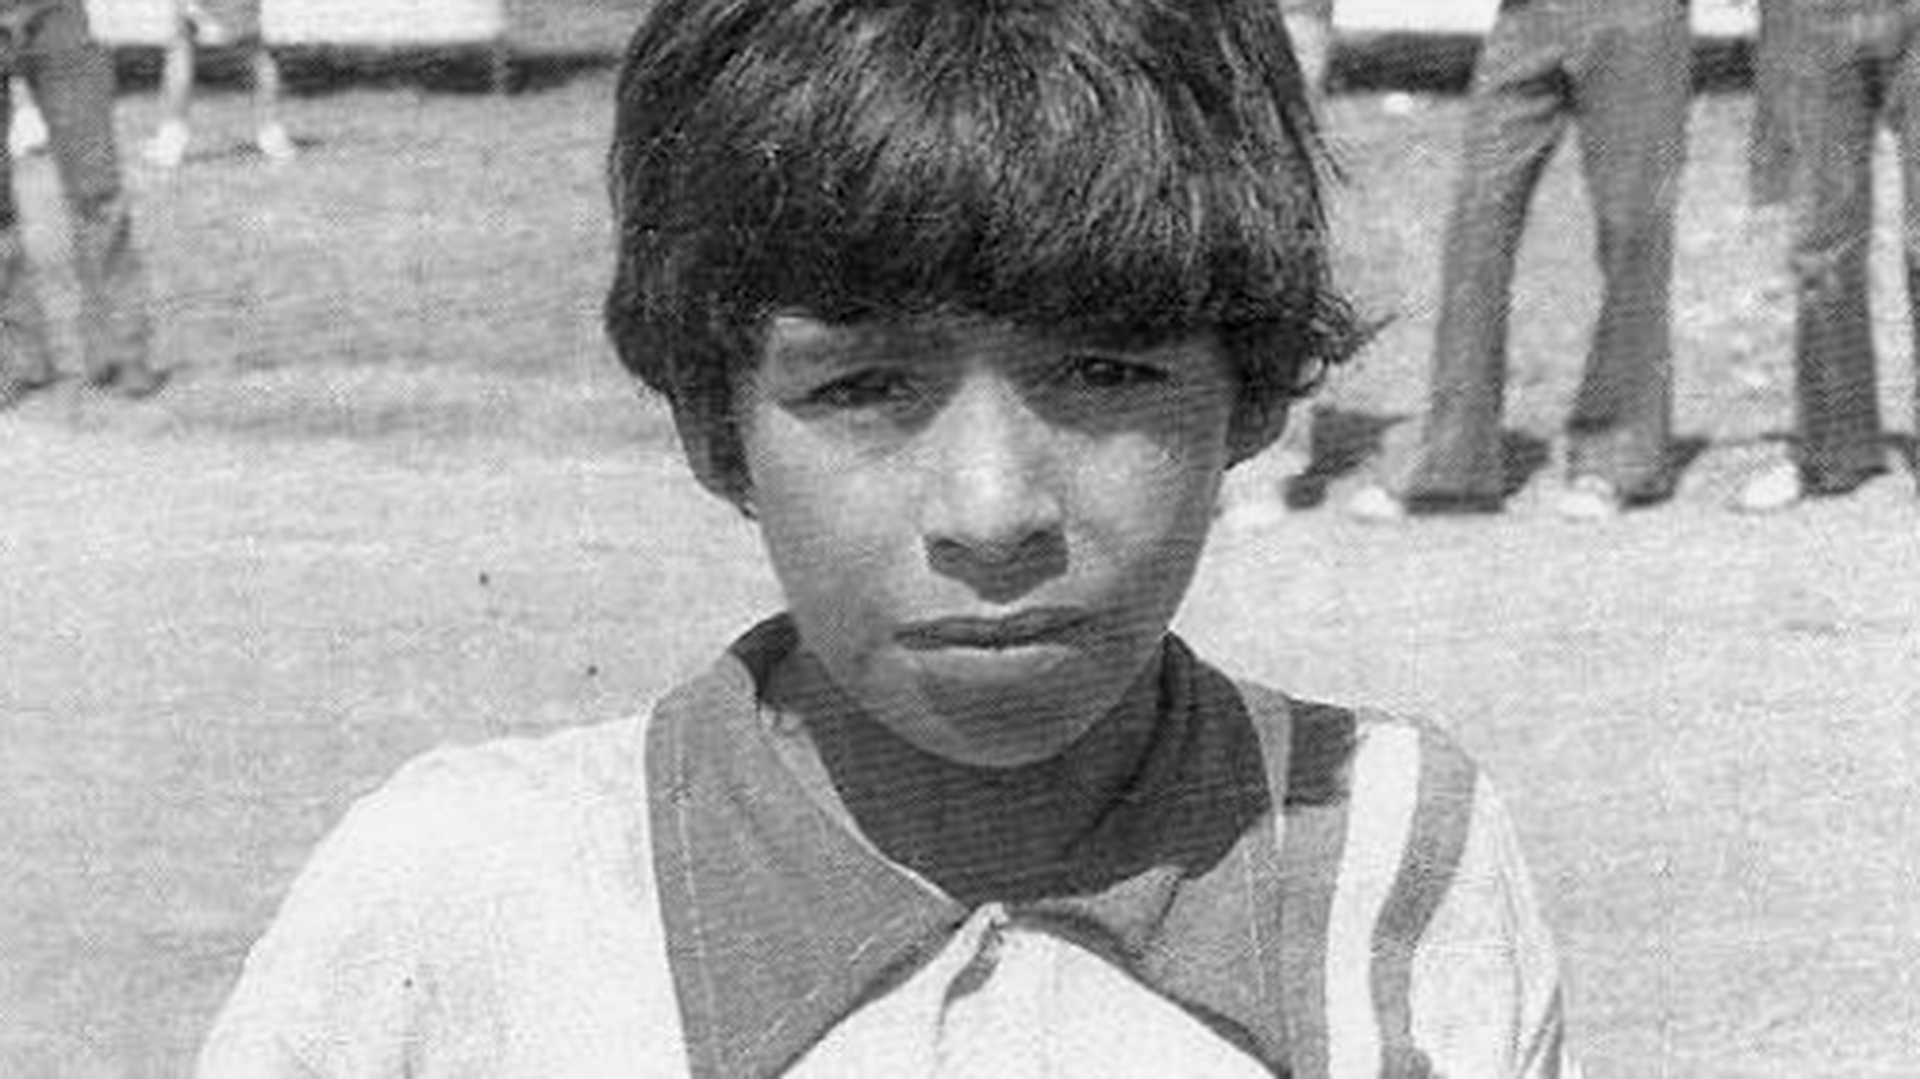 Maradona llegó a los diez años a Argentinos Juniors e integró el equipo que su propio "descubridor", Francis Cornejo, los llamó "Los cebollitas".